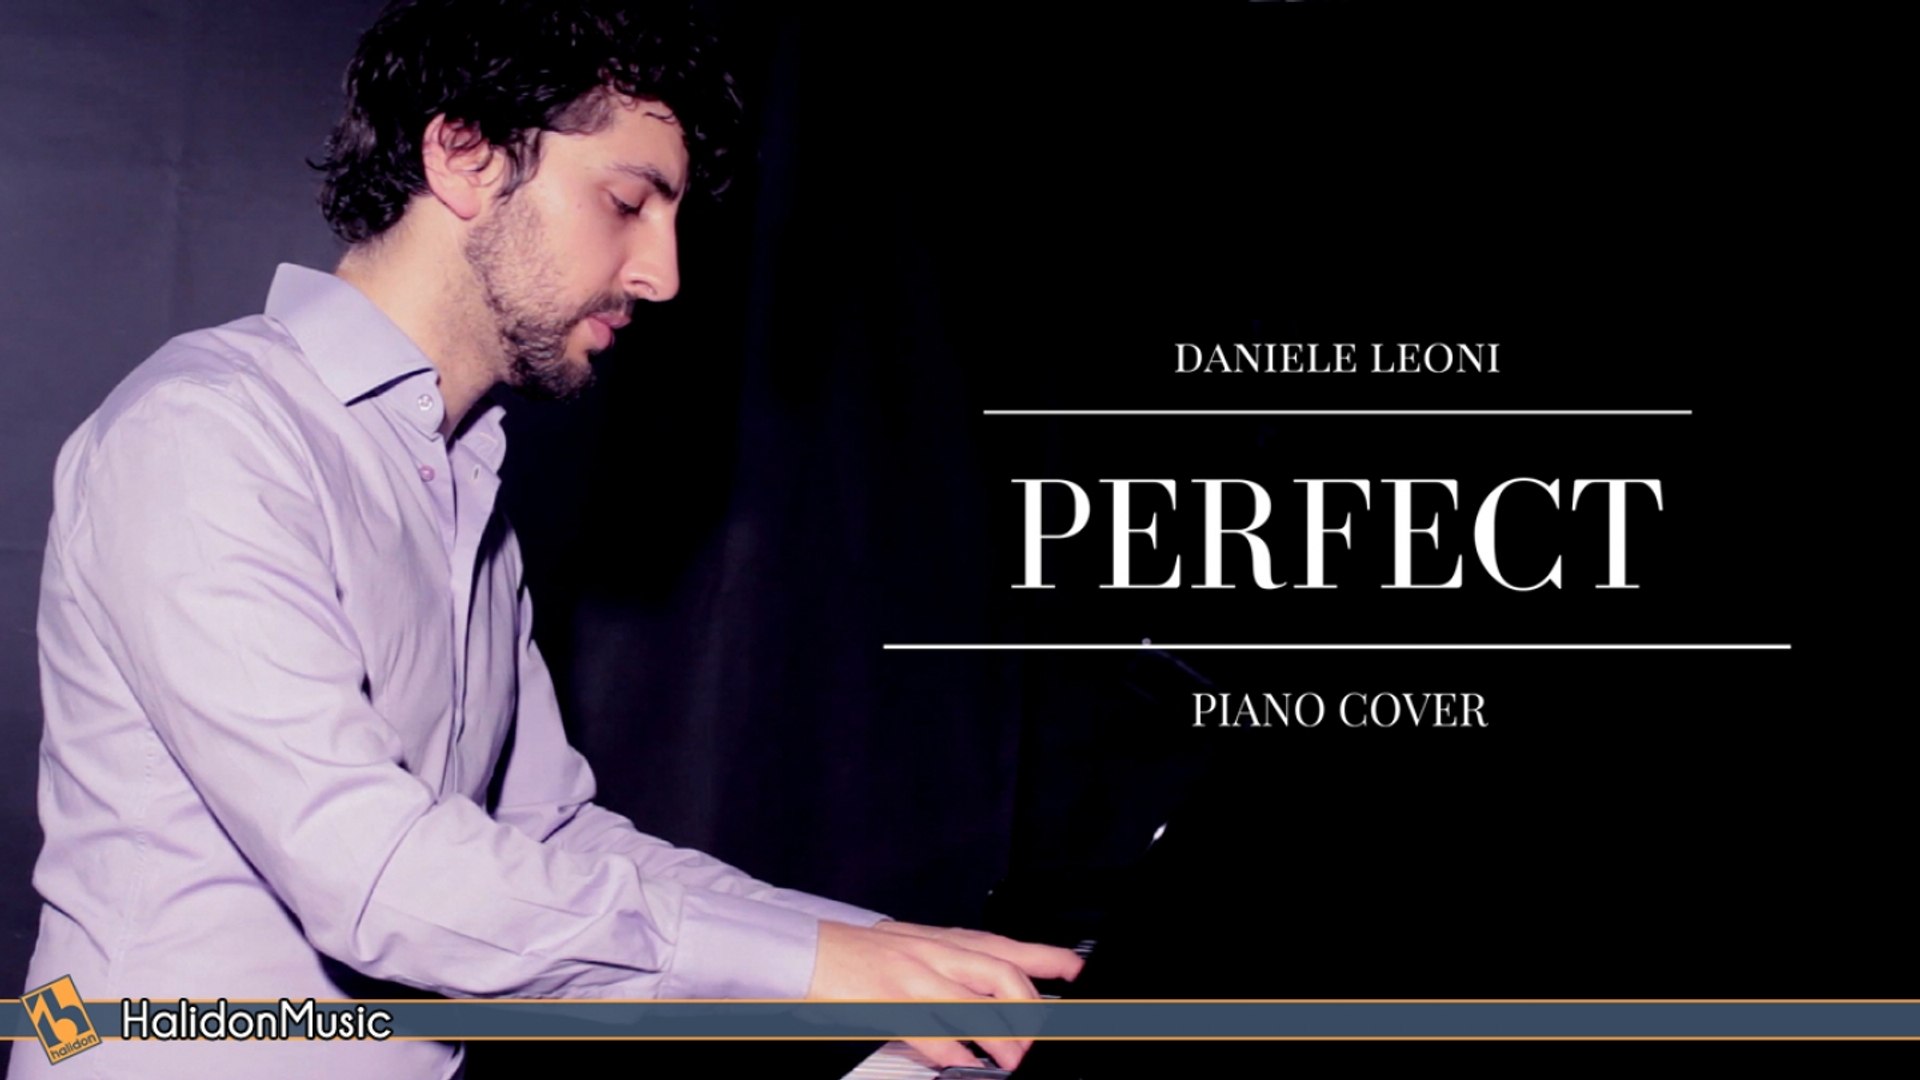 Daniele Leoni - Perfect (Piano Cover)